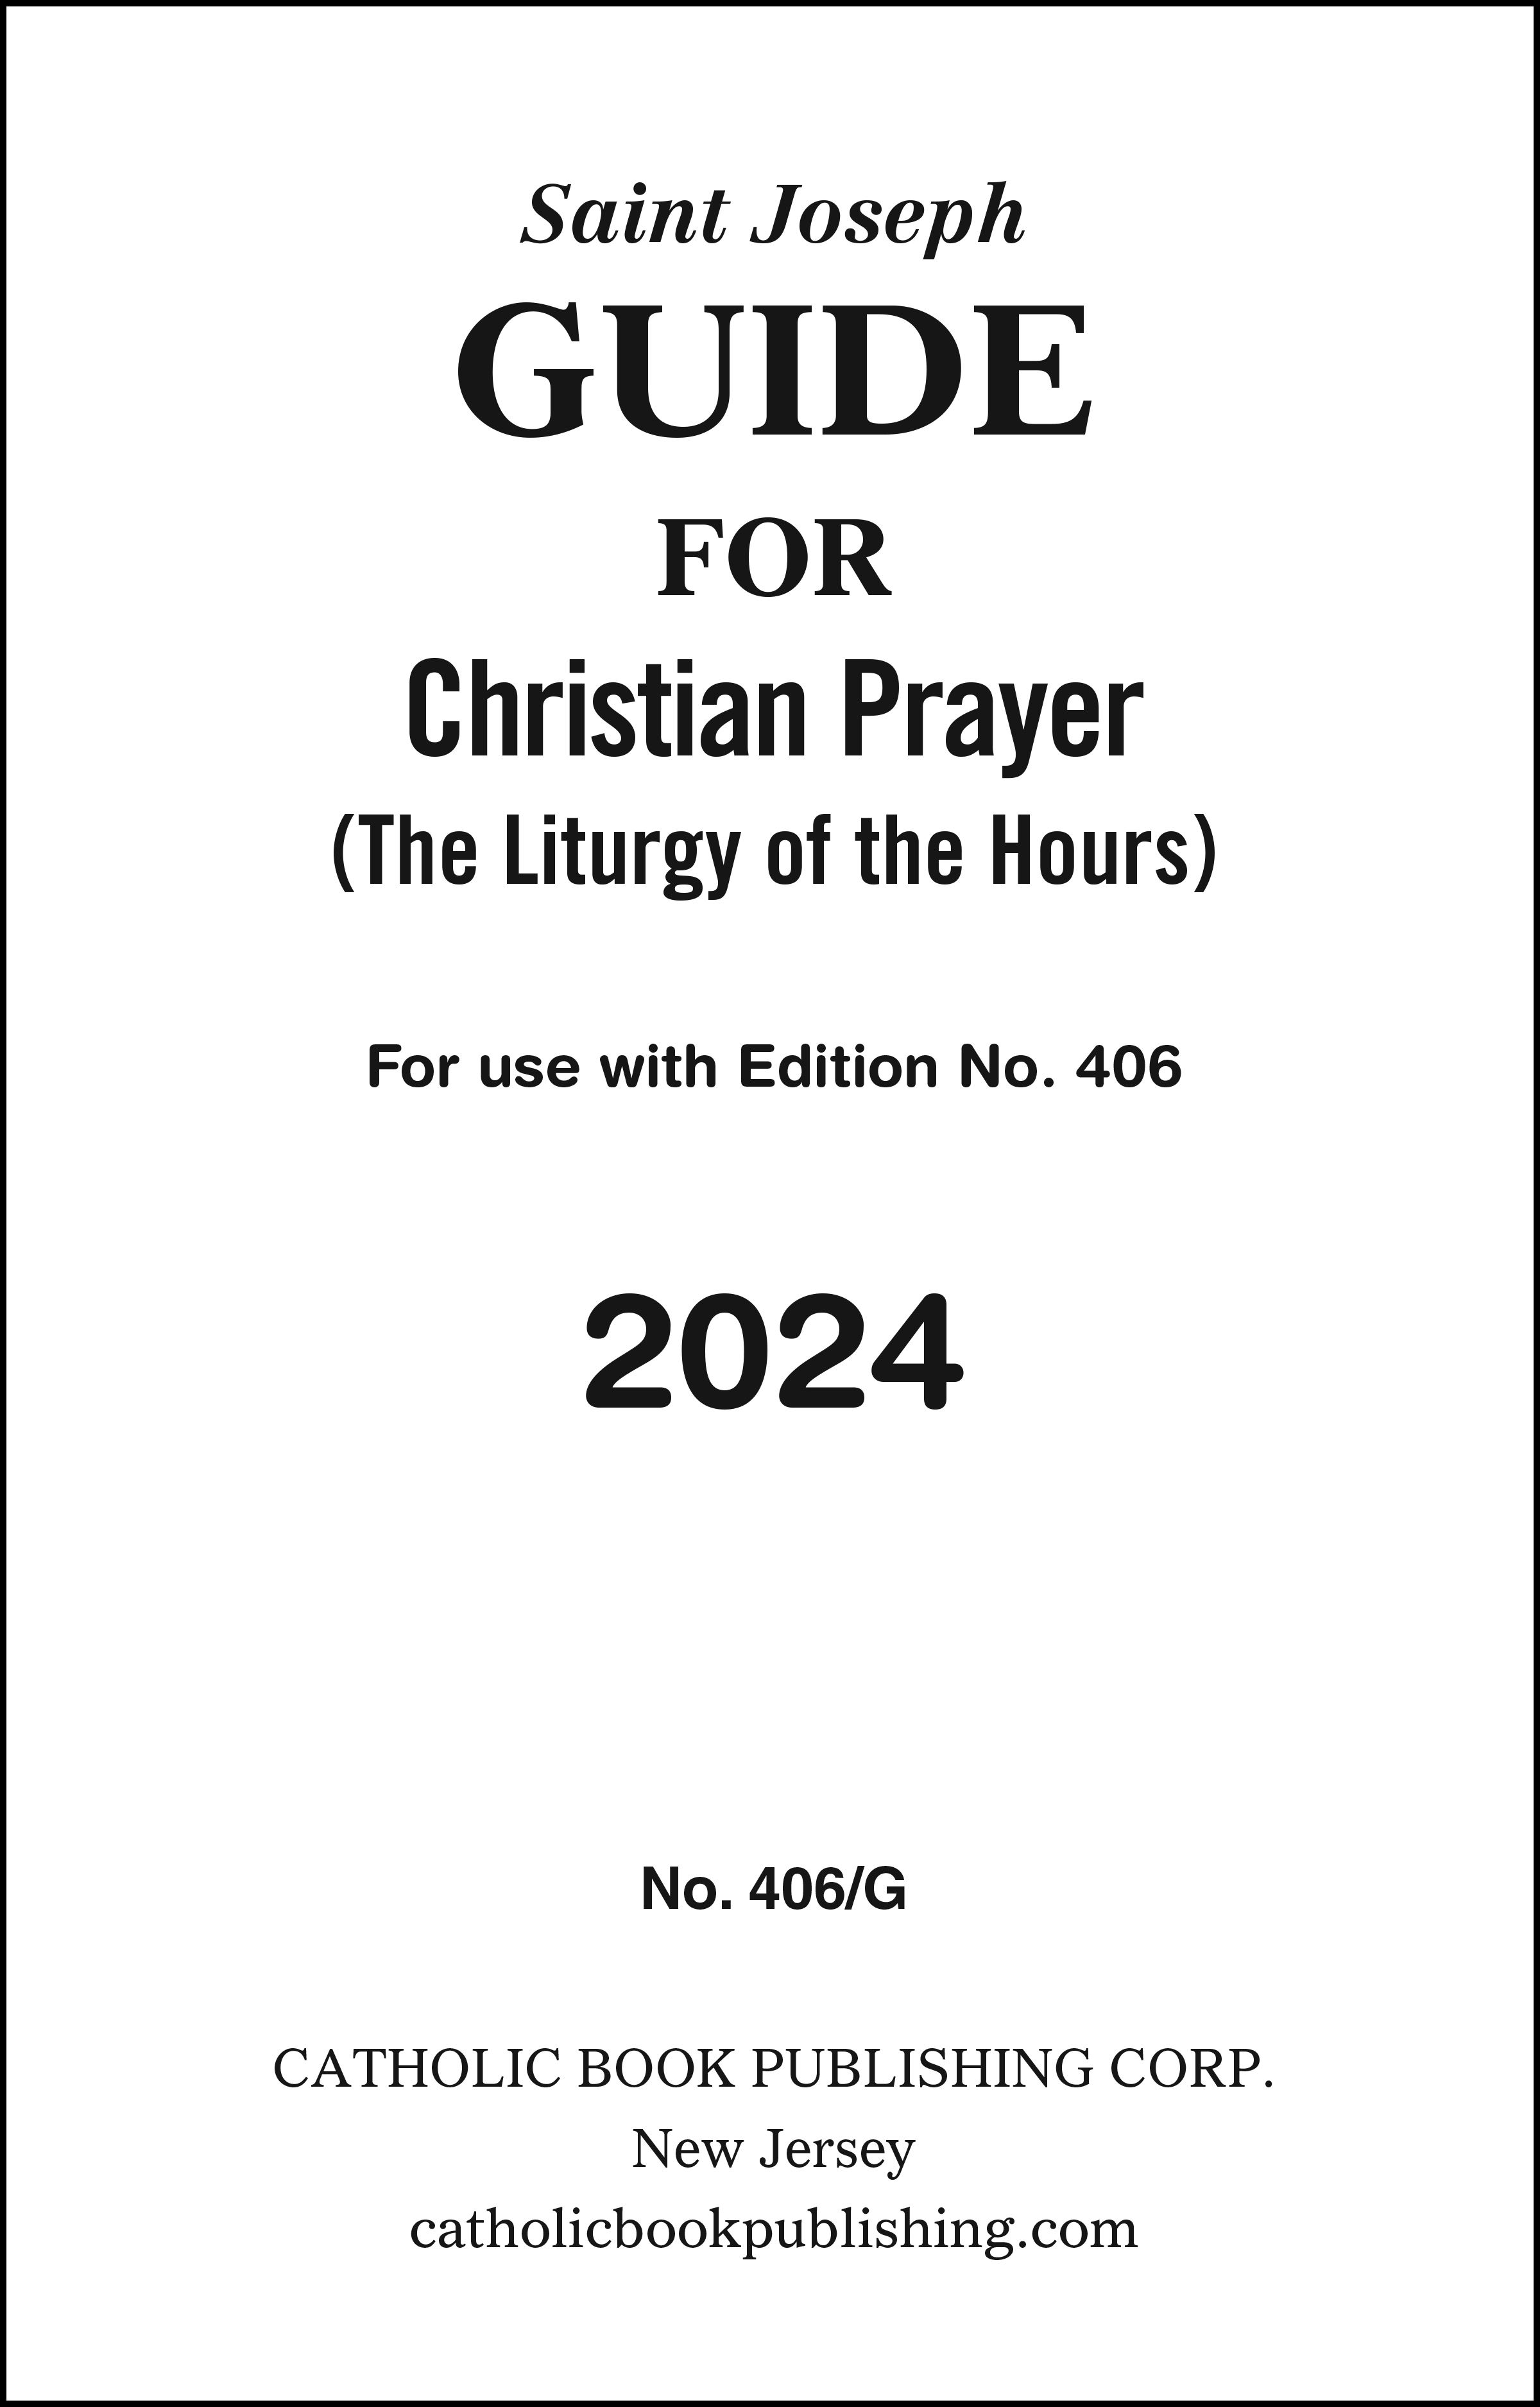 Christian Prayer Guide For 2024